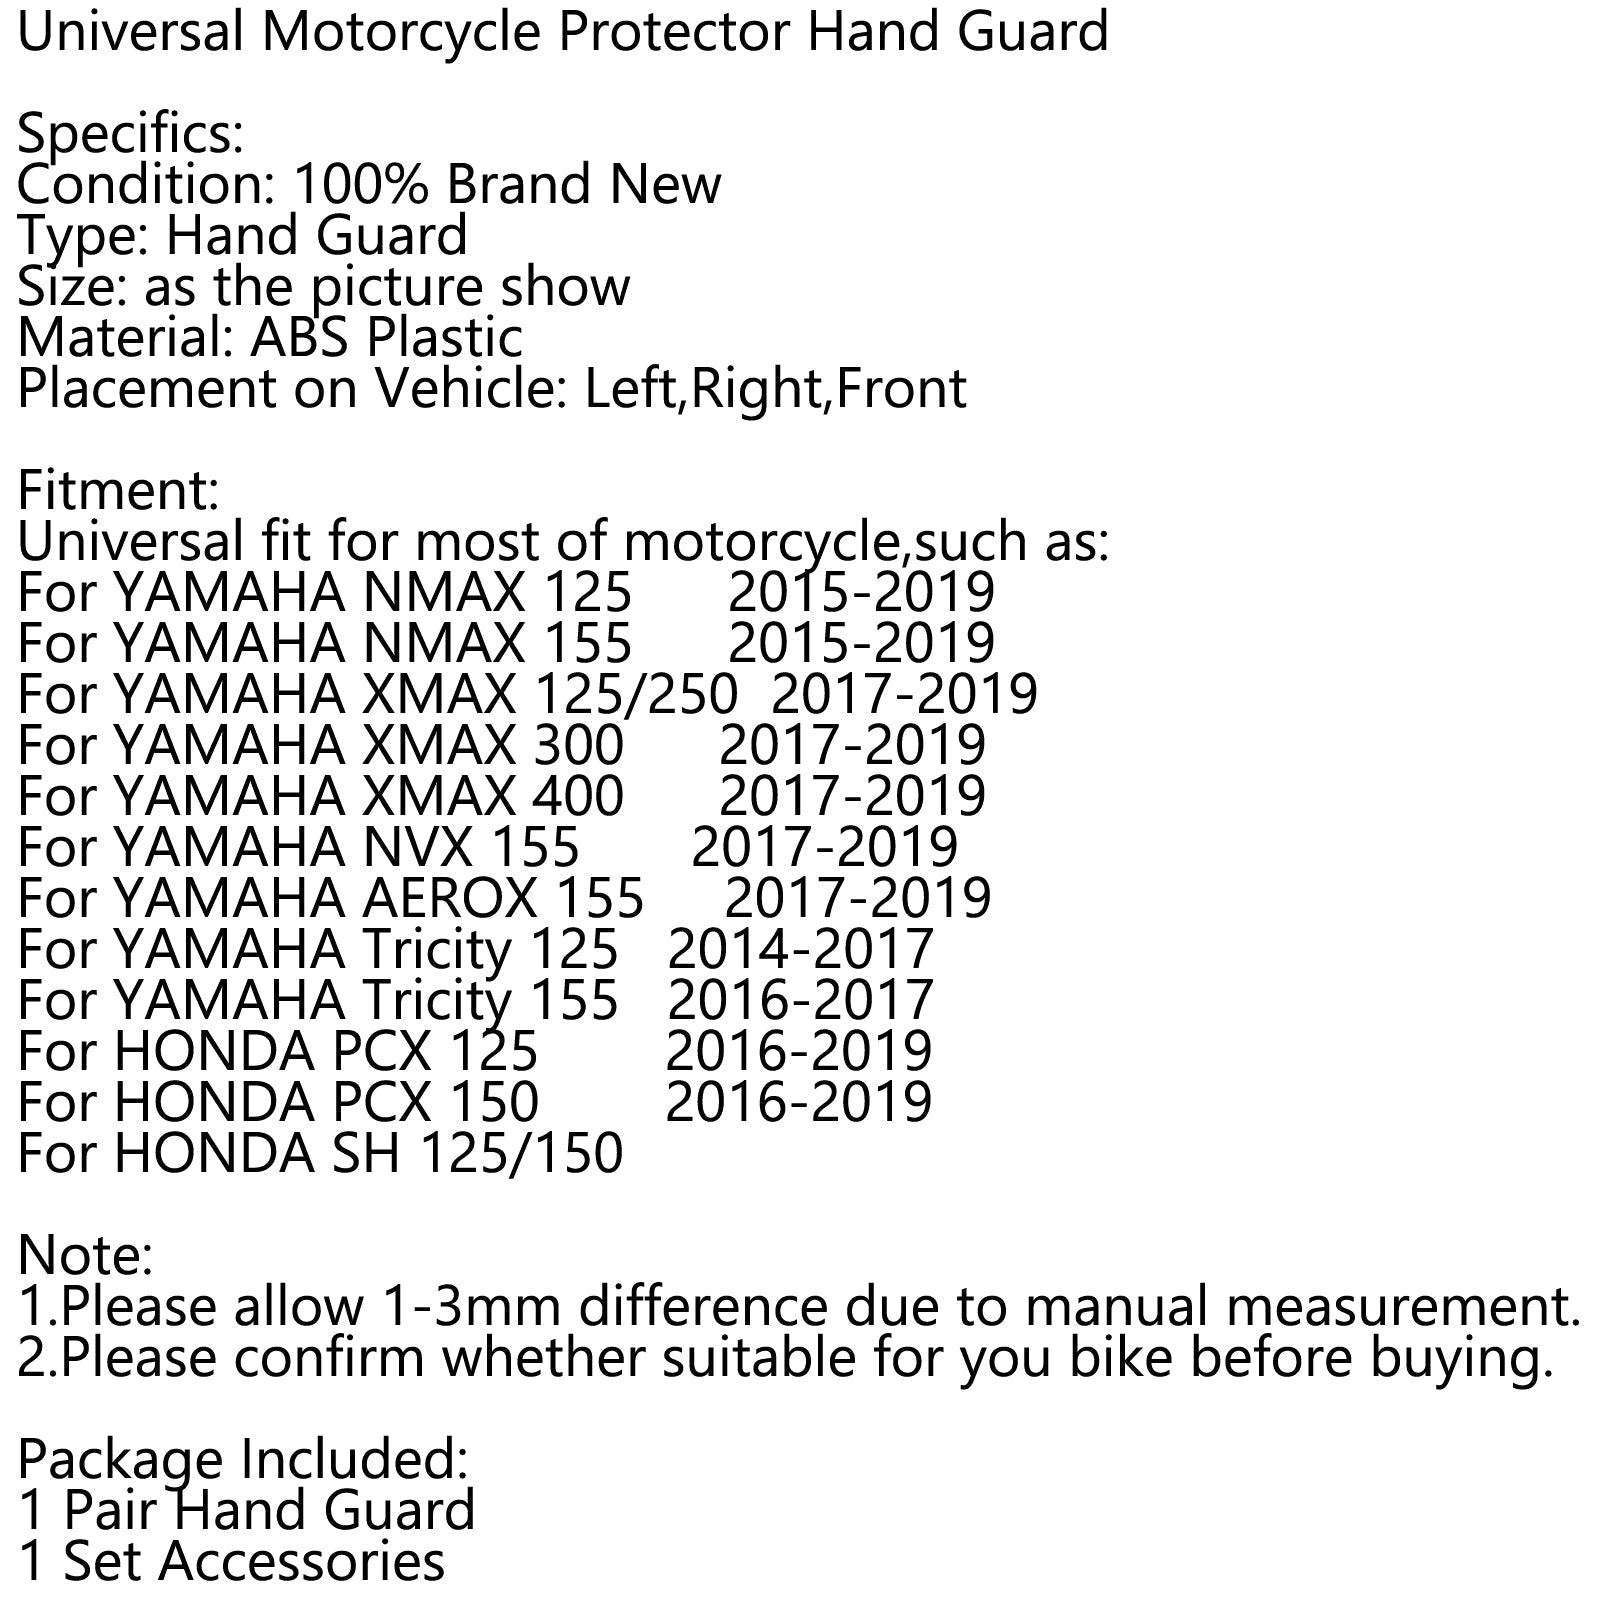 Deflector de viento Universal para motocicleta ABS, protector de manos para Motocross, protector genérico